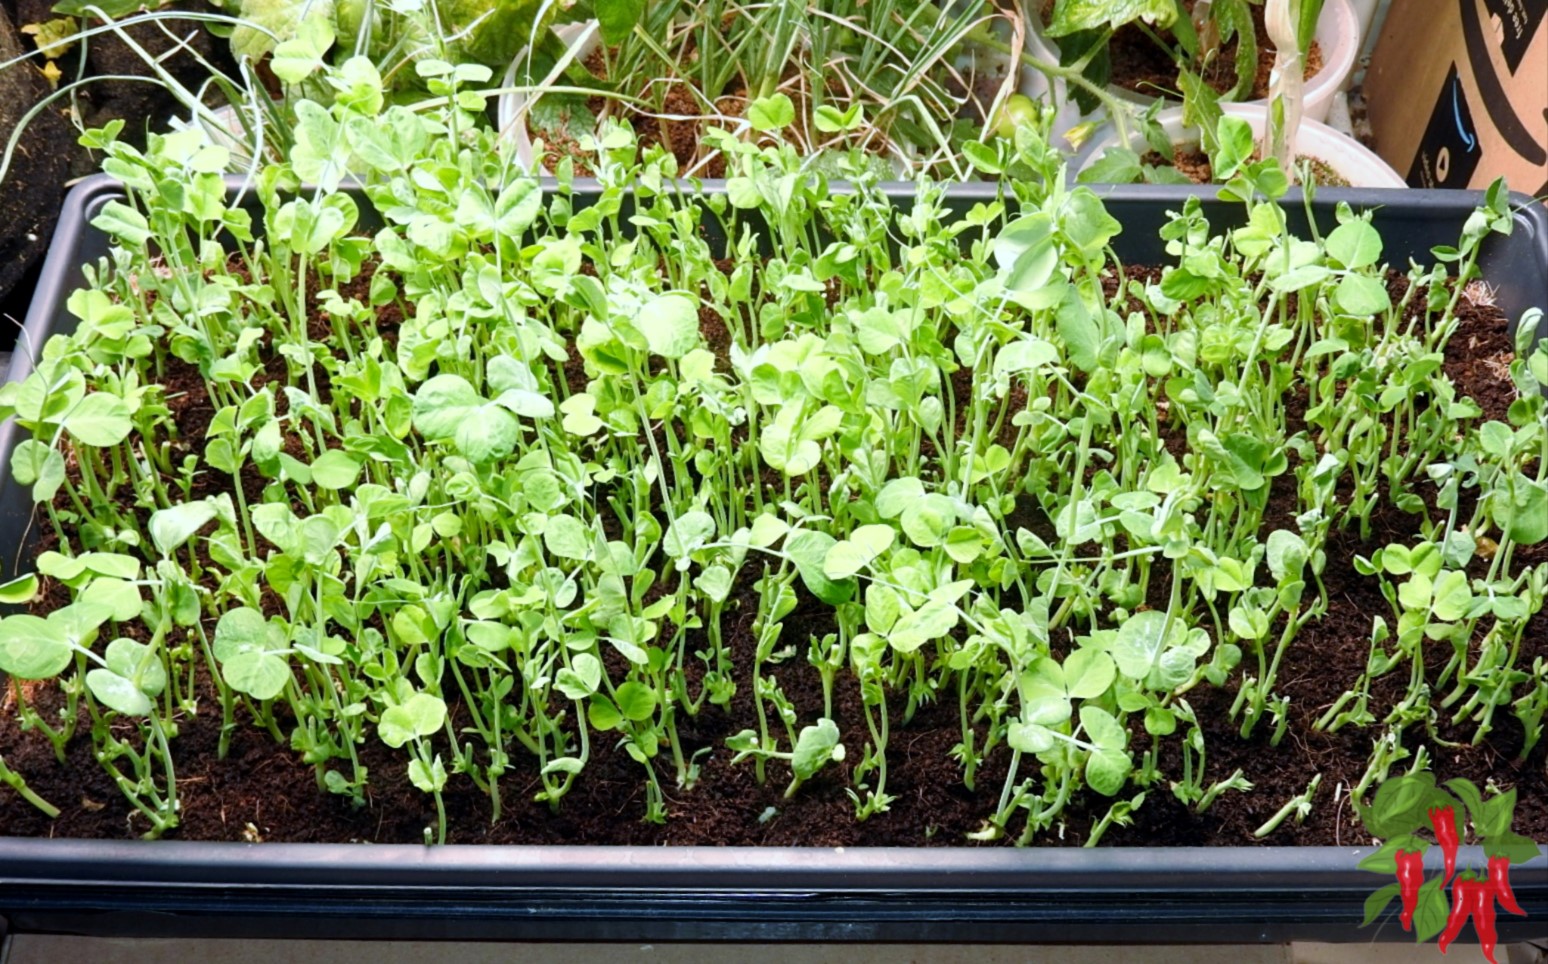 Growing Microgreens Inside